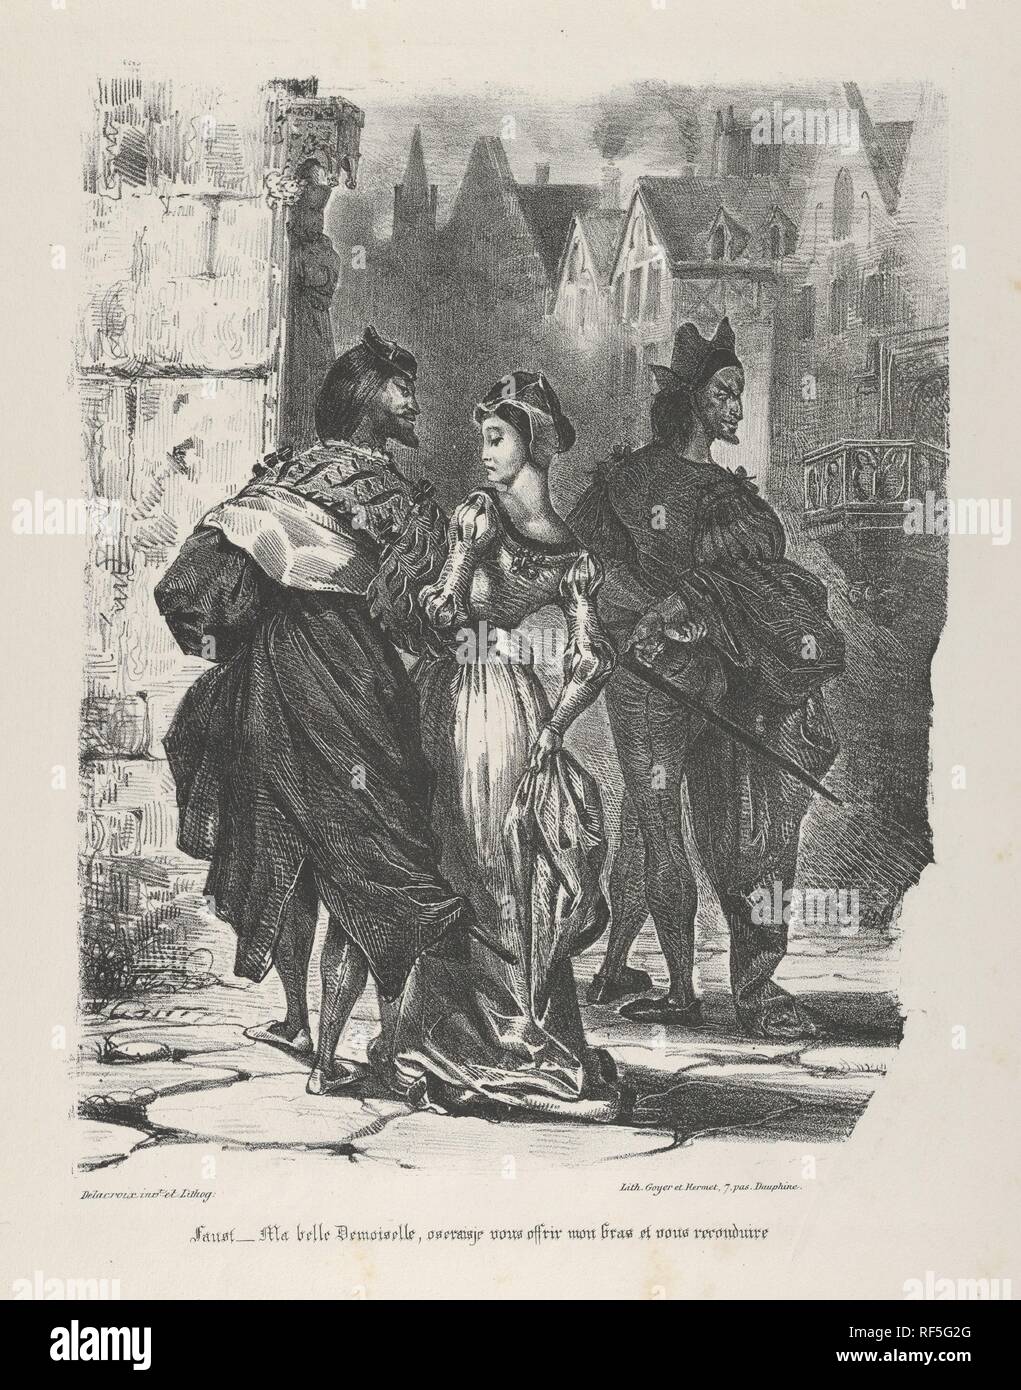 Faust cercando di sedurre Marguerite (Goethe, Faust). Artista: Eugène Delacroix (francese, Charenton-Saint-Maurice 1798 - 1863 Parigi). Dimensioni: foglio: 19 1/8 x 12 1/2 in. (48,5 x 31,8 cm) immagine: 11 1/4 x 8 1/8 in. (28,5 x 20,7 cm). Serie/Portfolio: Faust. Data: 1825-27. Faust, incontrando Margaret in strada, si rivolge a lei: 'Ma belle demoiselle, oserais je vous offrir mon bras et vous reconduire chez vous?" ['My ragazza, potrei forse venture per darvi il mio braccio e di essere la vostra scorta home?"] Faust di anticipi sono unsuccessfull. La giovane donna libera il suo braccio e si allontana. Museo: Metropo Foto Stock